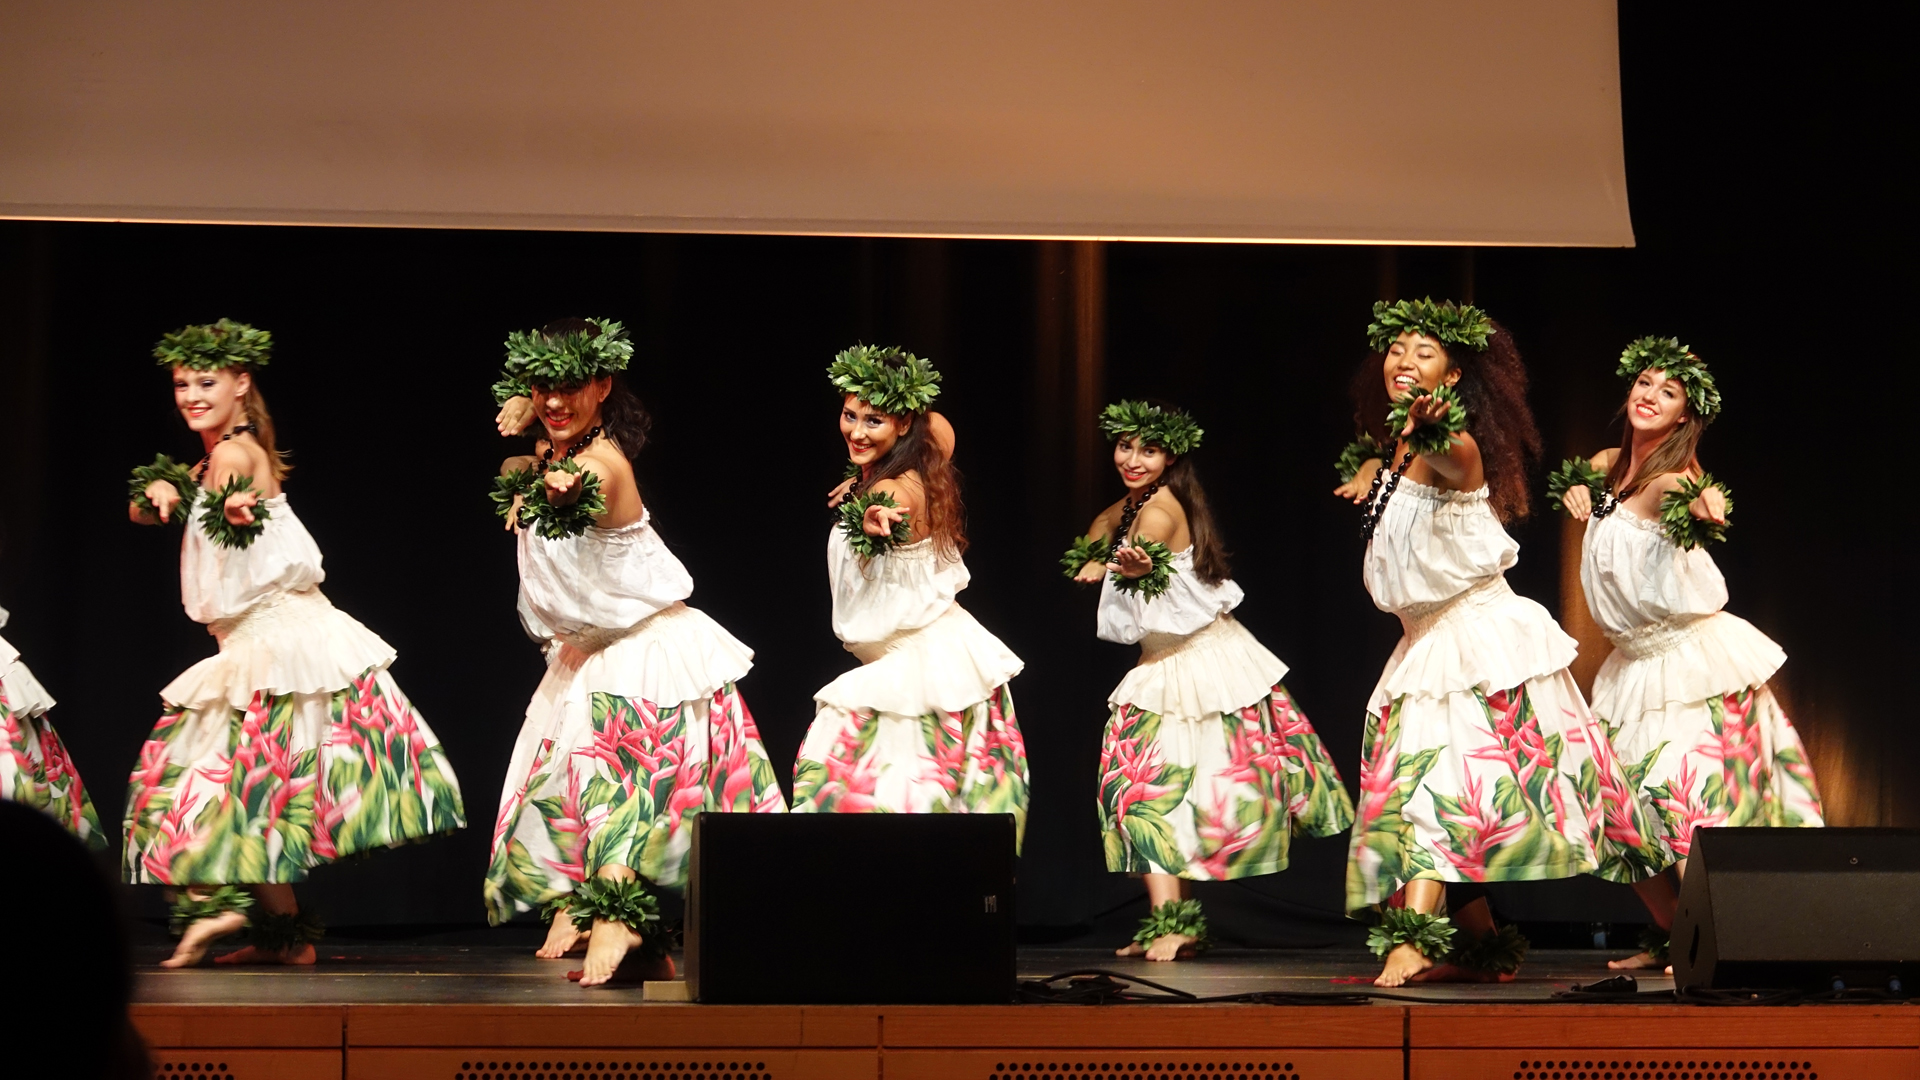 Die Theatergruppe „Heartbridge“ wurde auf Hawaii gegründet, was die tänzerischen Einflüsse erklärt